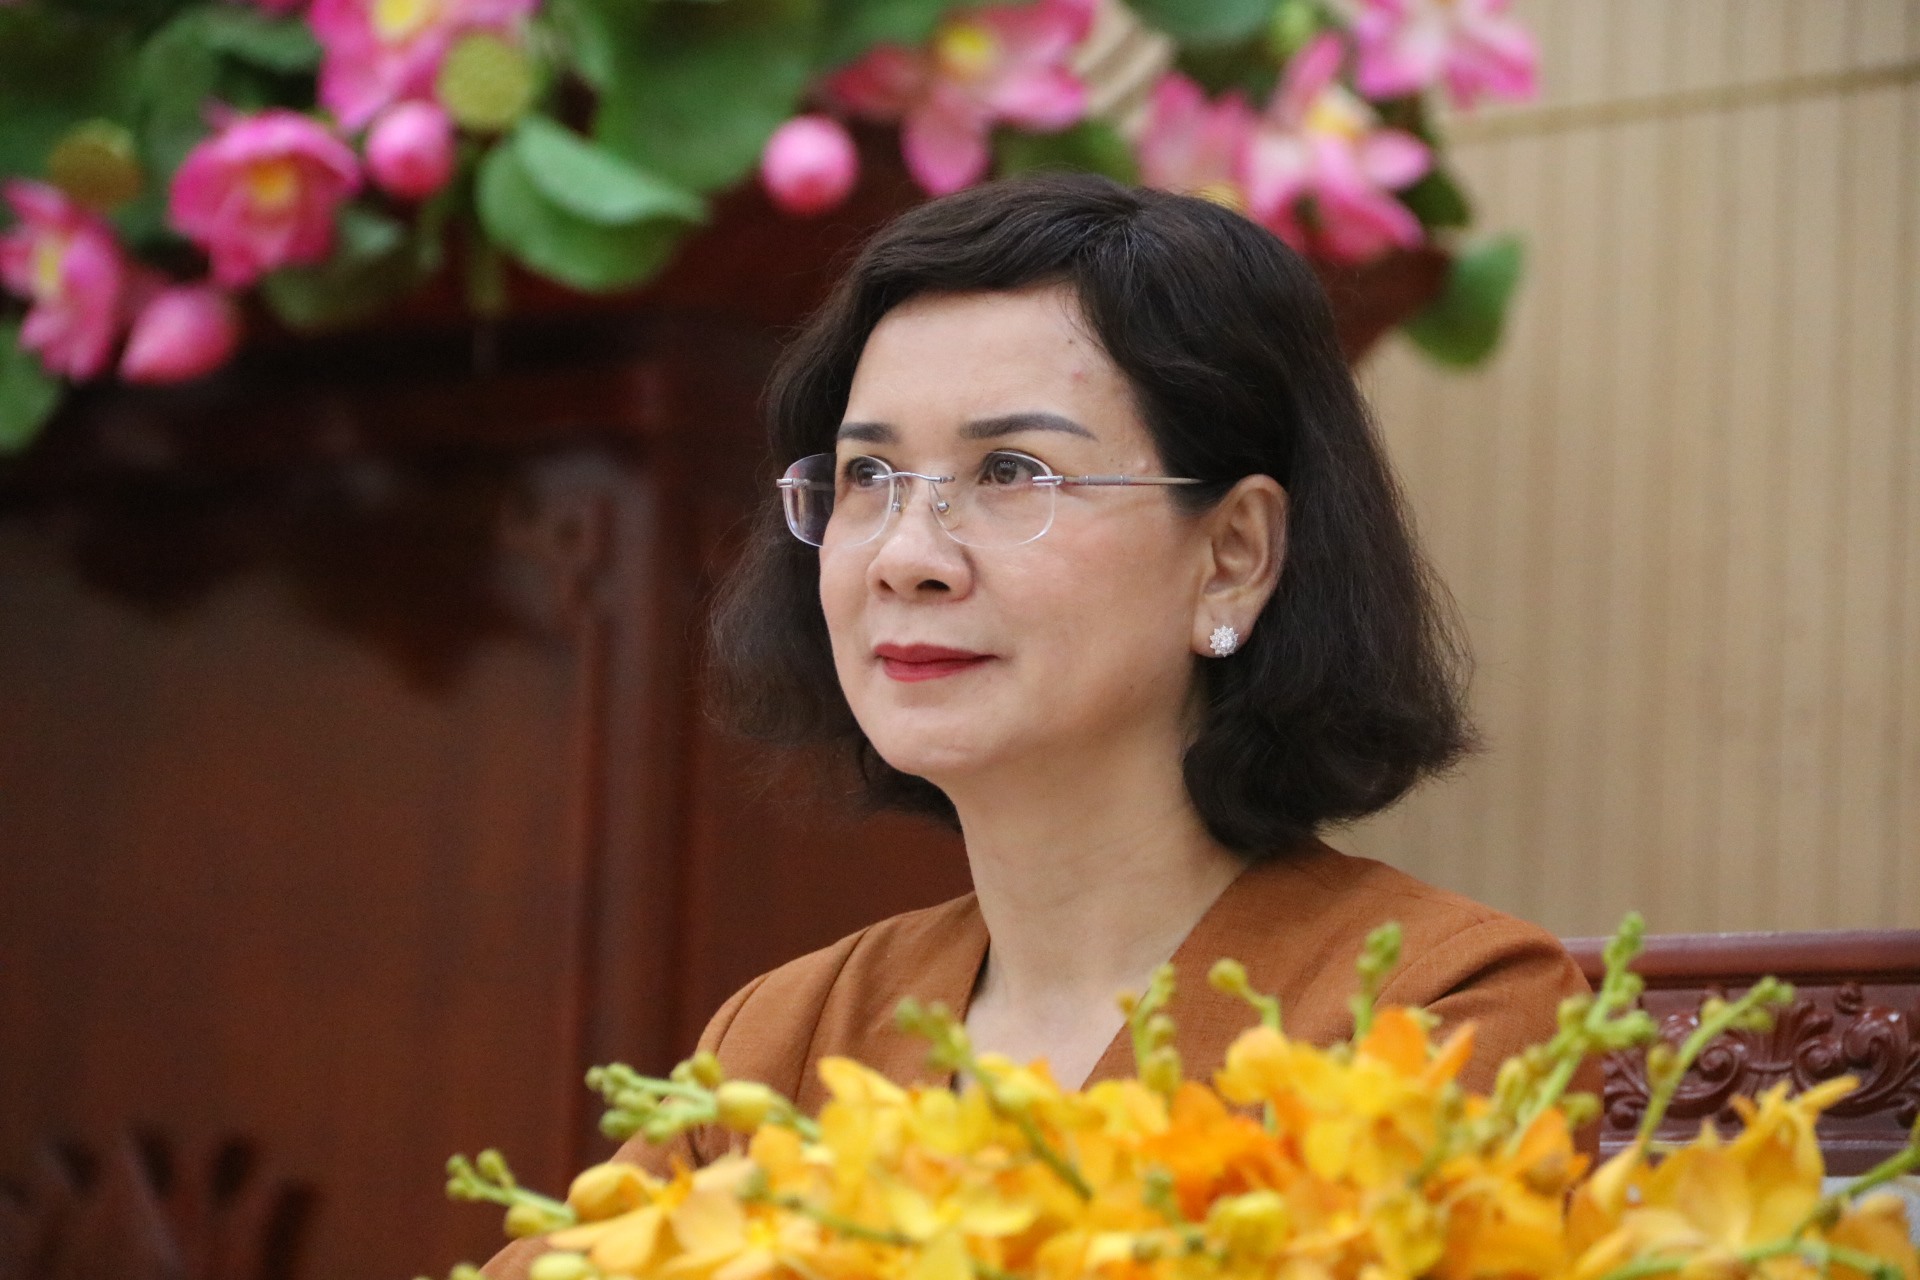 Bà Nguyễn Thị Tuyết Minh - Phó Chủ tịch UBND tỉnh Bình Phước trao đổi phản hồi thông tin với các nhà báo. Ảnh: Đình Trọng